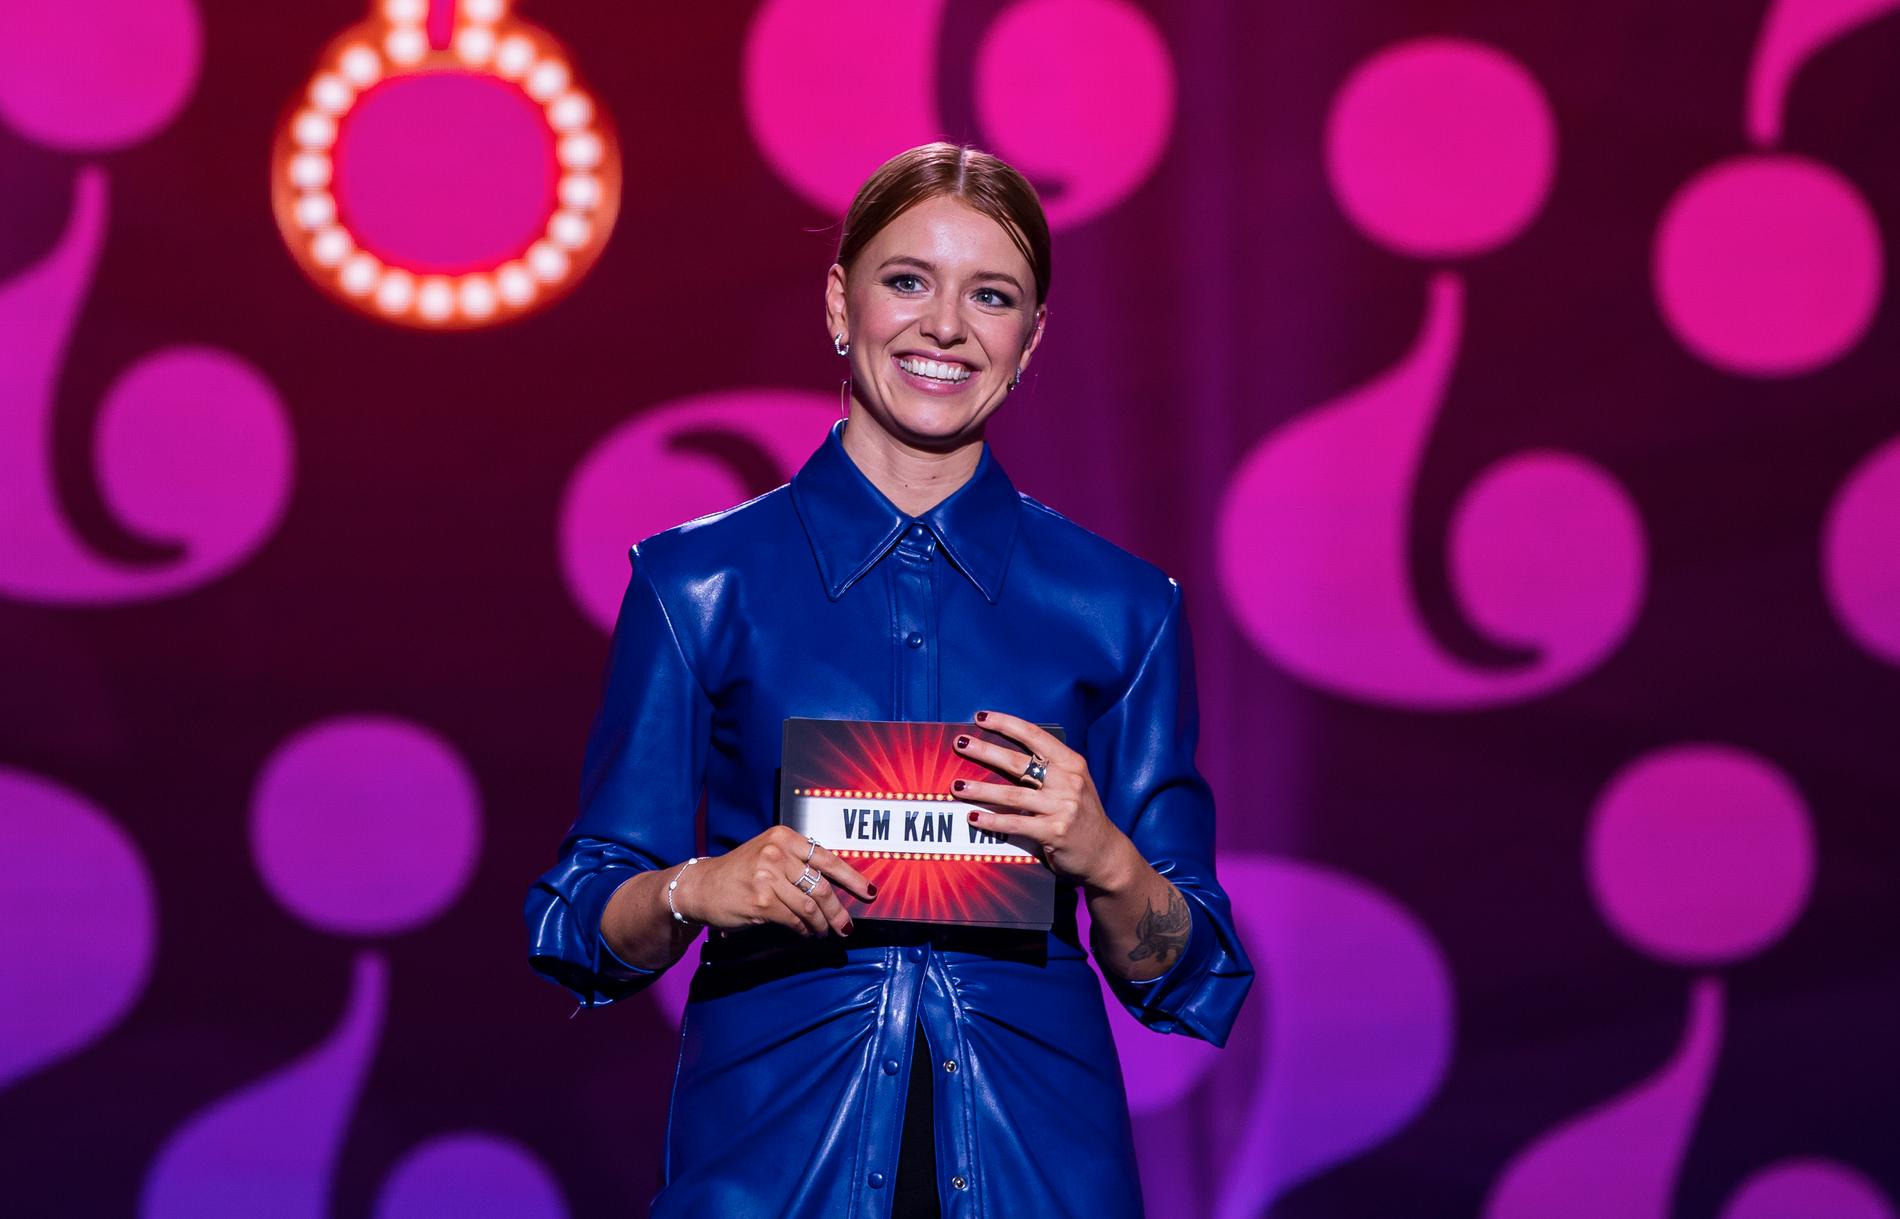 Clara Henry är programledare för SVT:s nya underhållningsprogram "Vem kan vad".